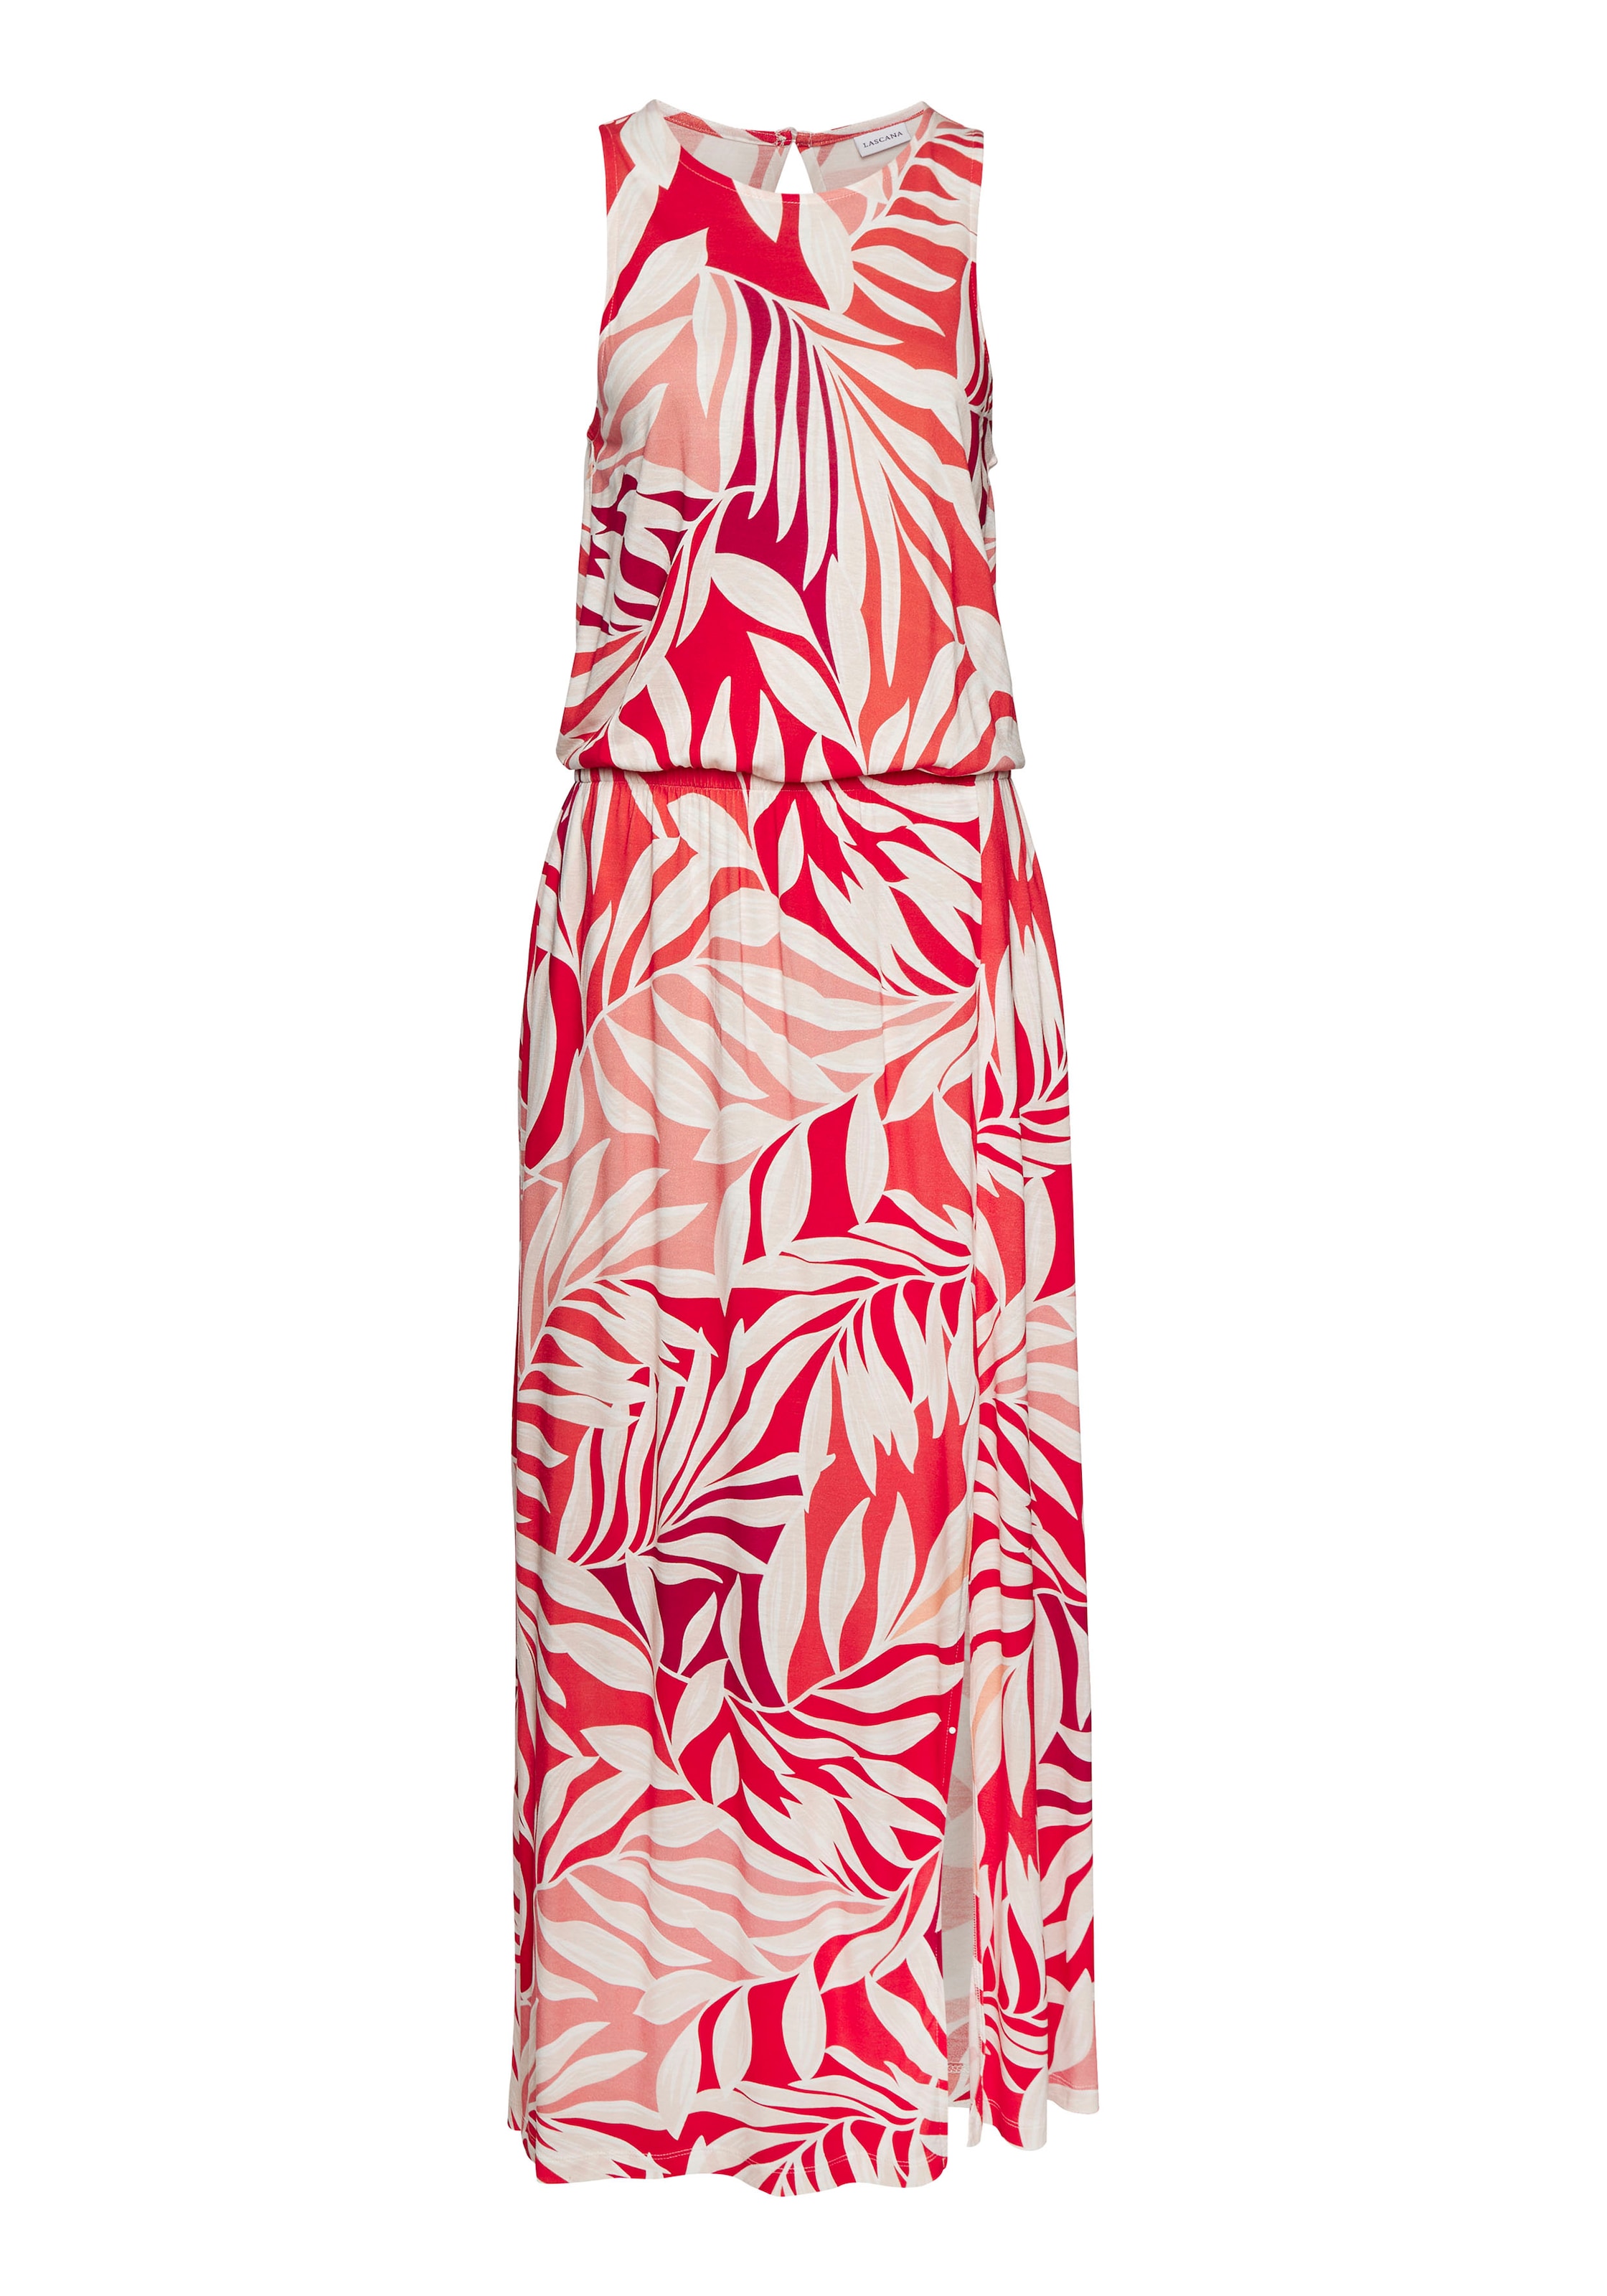 LASCANA Maxikleid, mit Alloverdruck und Schlitz, Jerseykleid, sommerlich-elegant